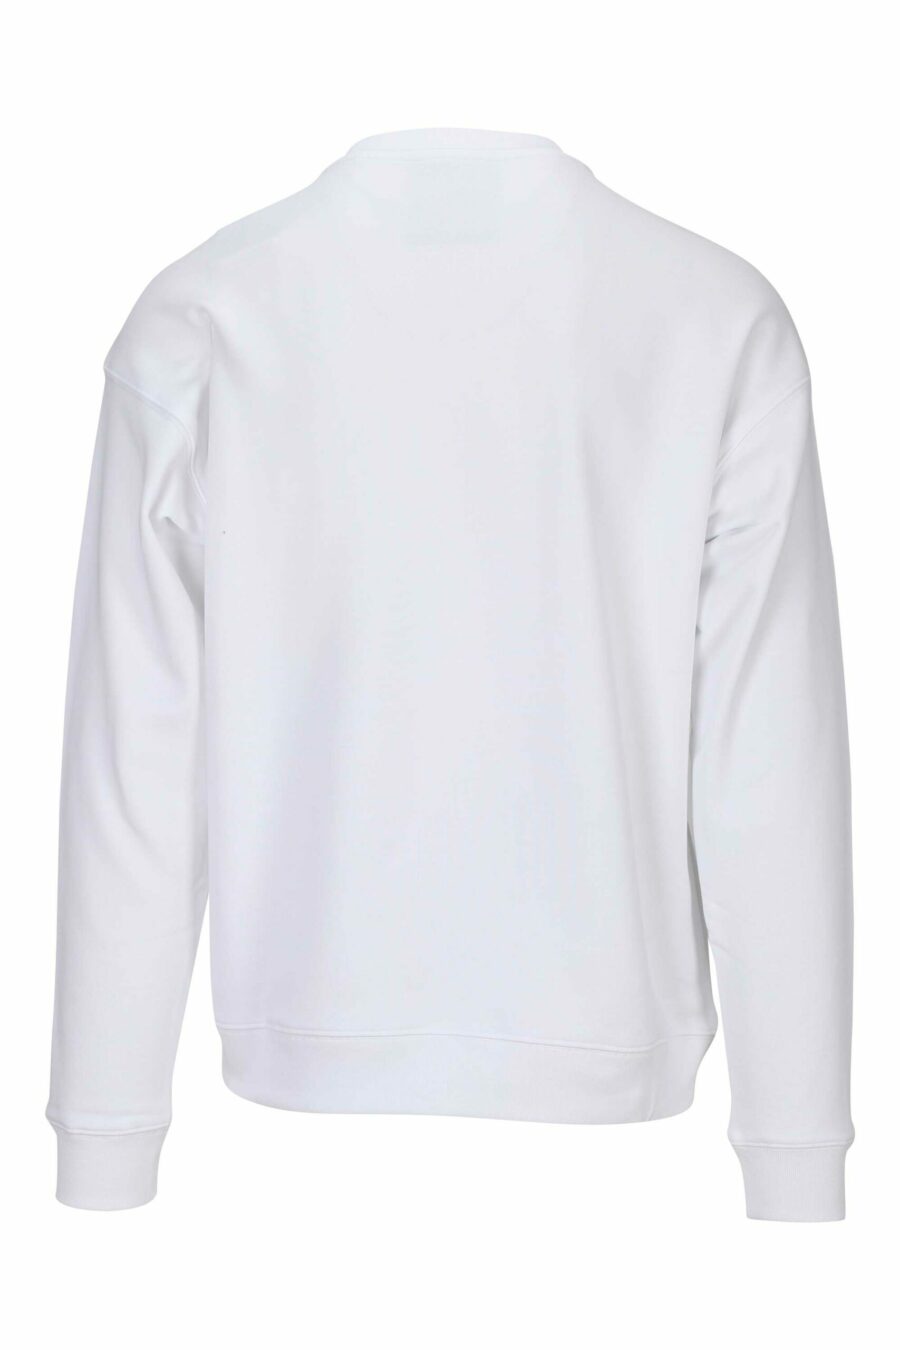 Sweat-shirt blanc en coton bio avec maxilogue noir classique - 667113402895 1 scaled